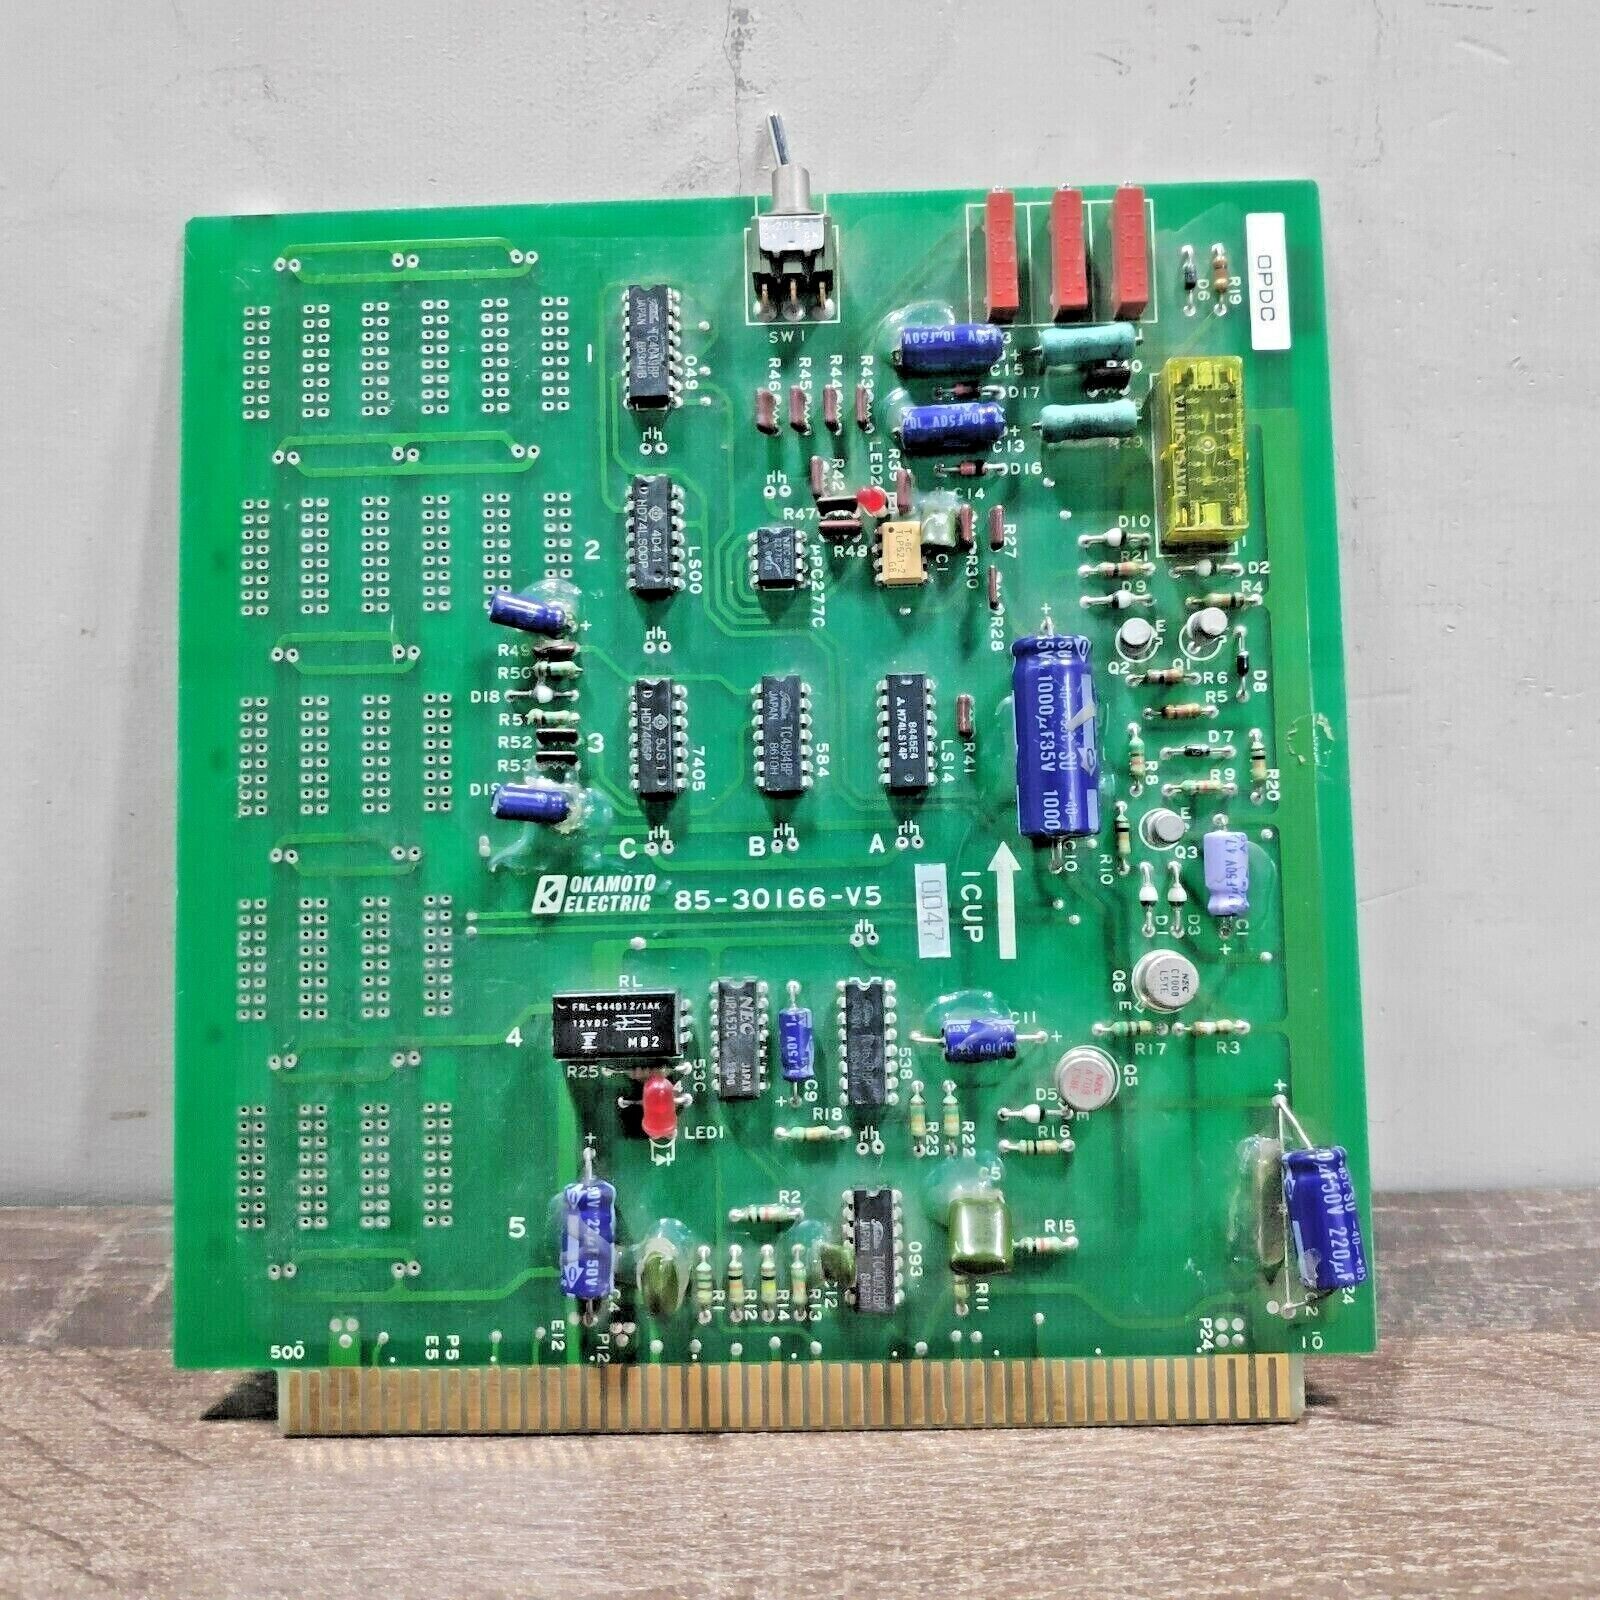 OKAMOTO ELECTRIC 85-30166-V5 PCB